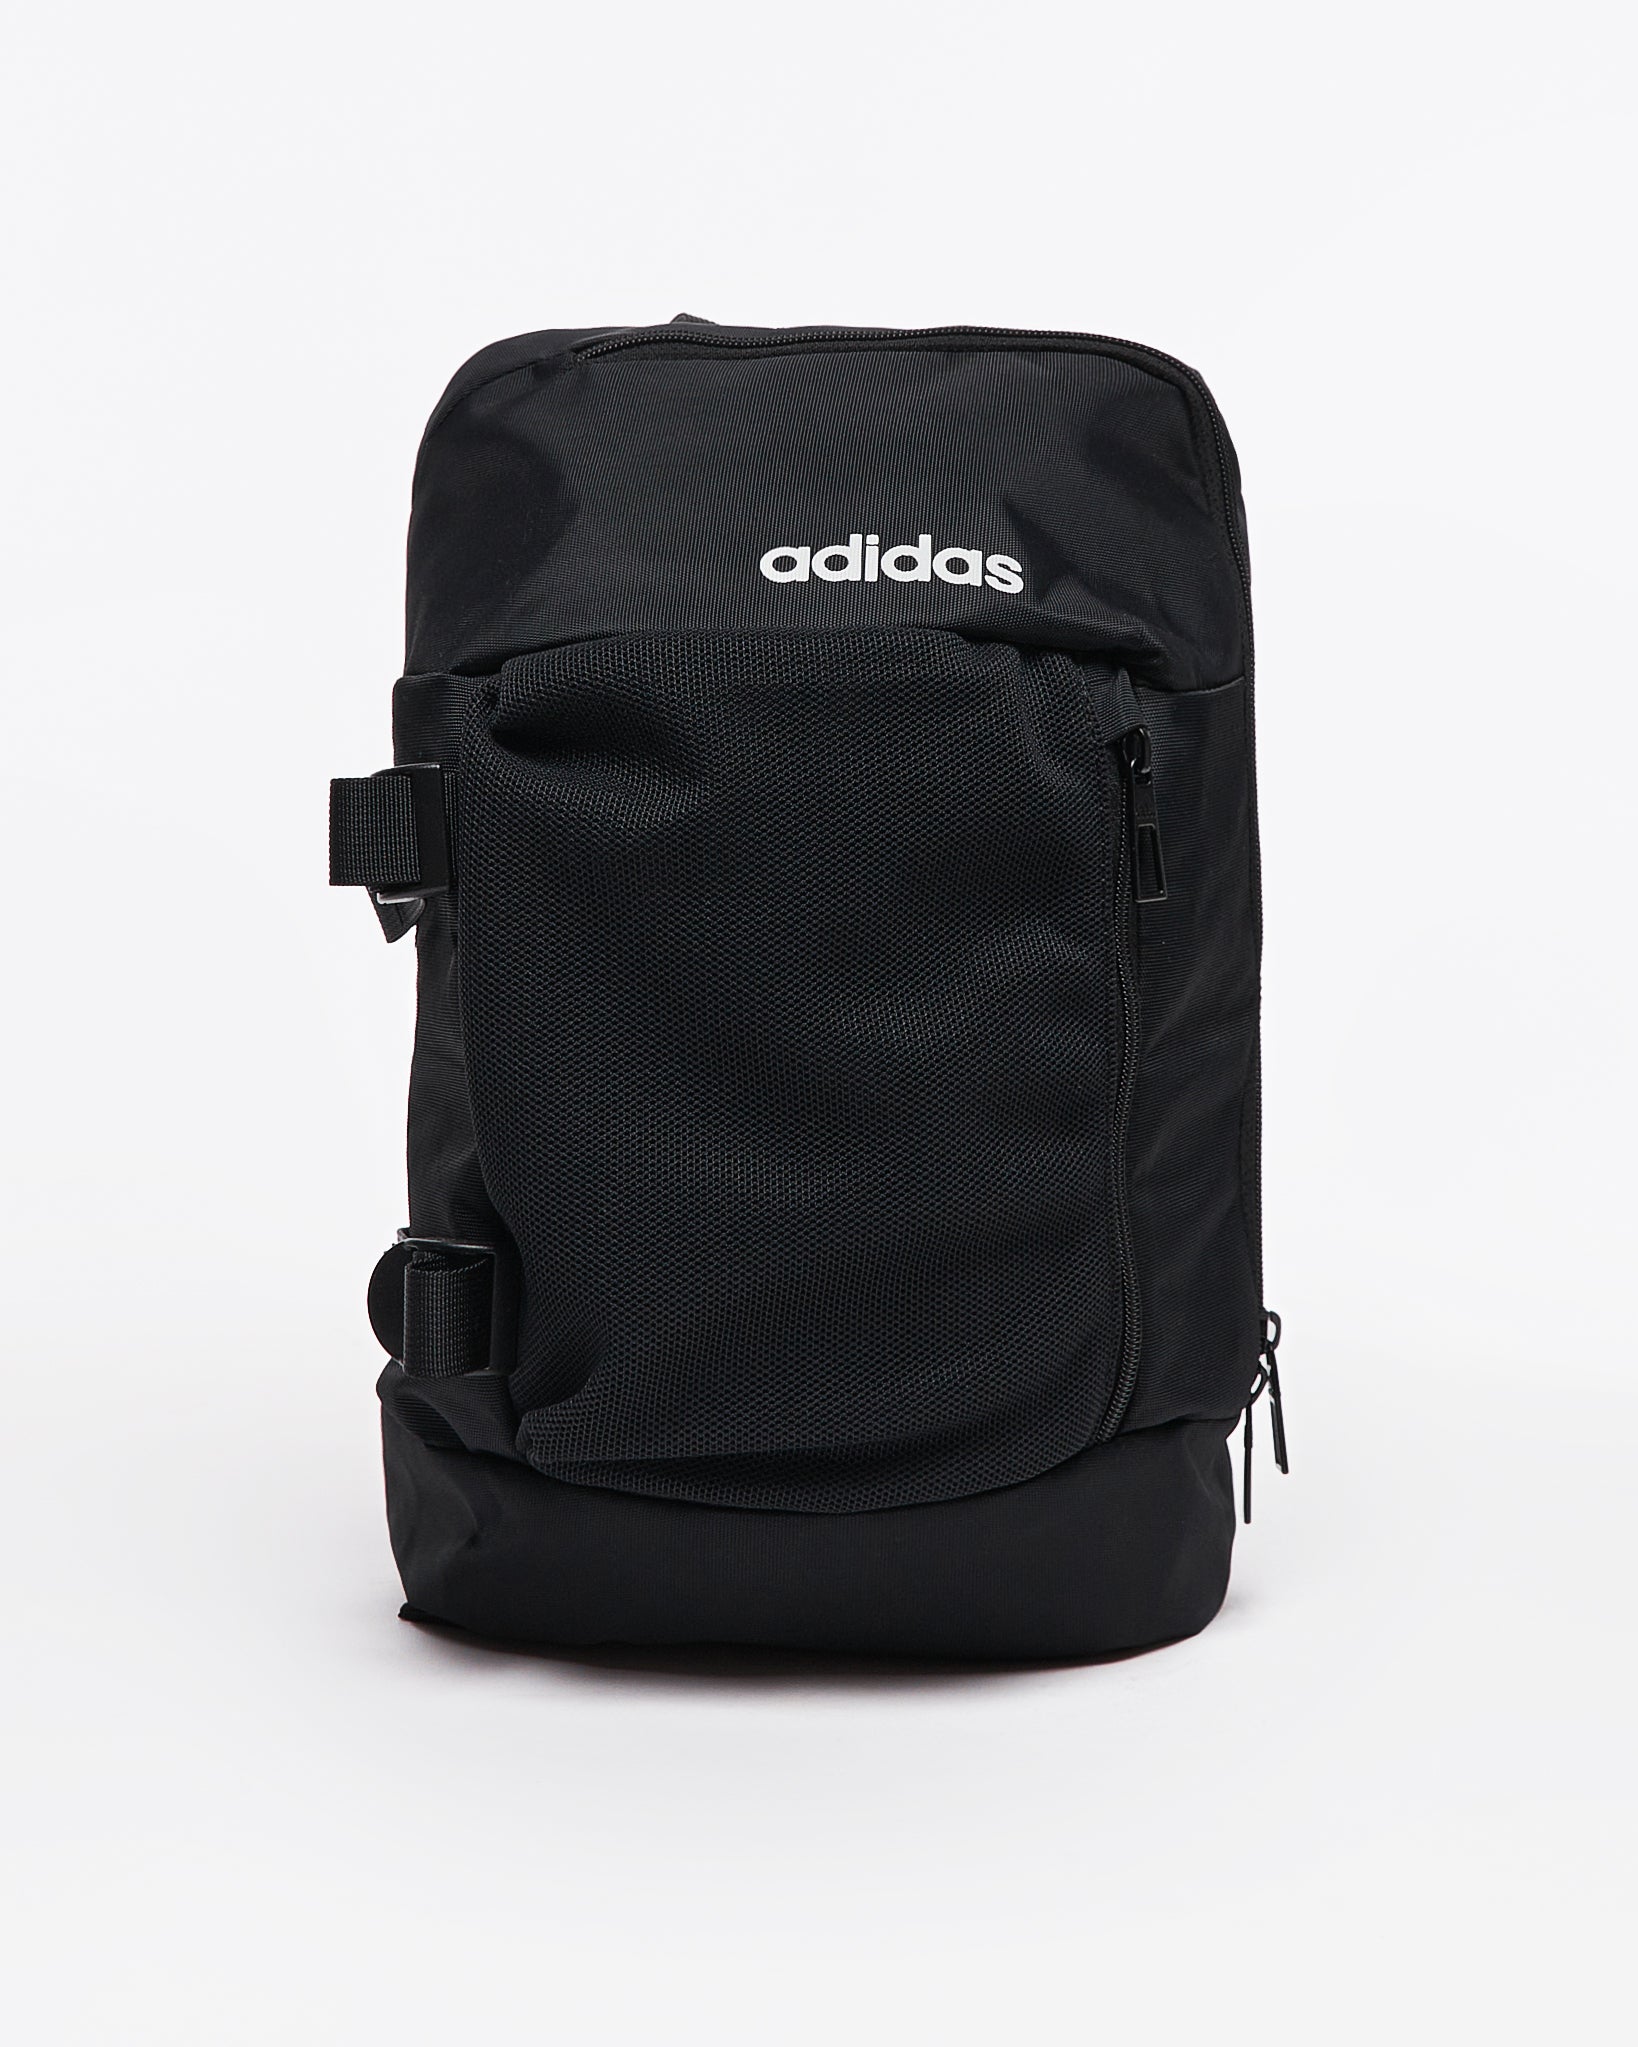 ADI One Shoulder Strap Unisex Backpack 16.90